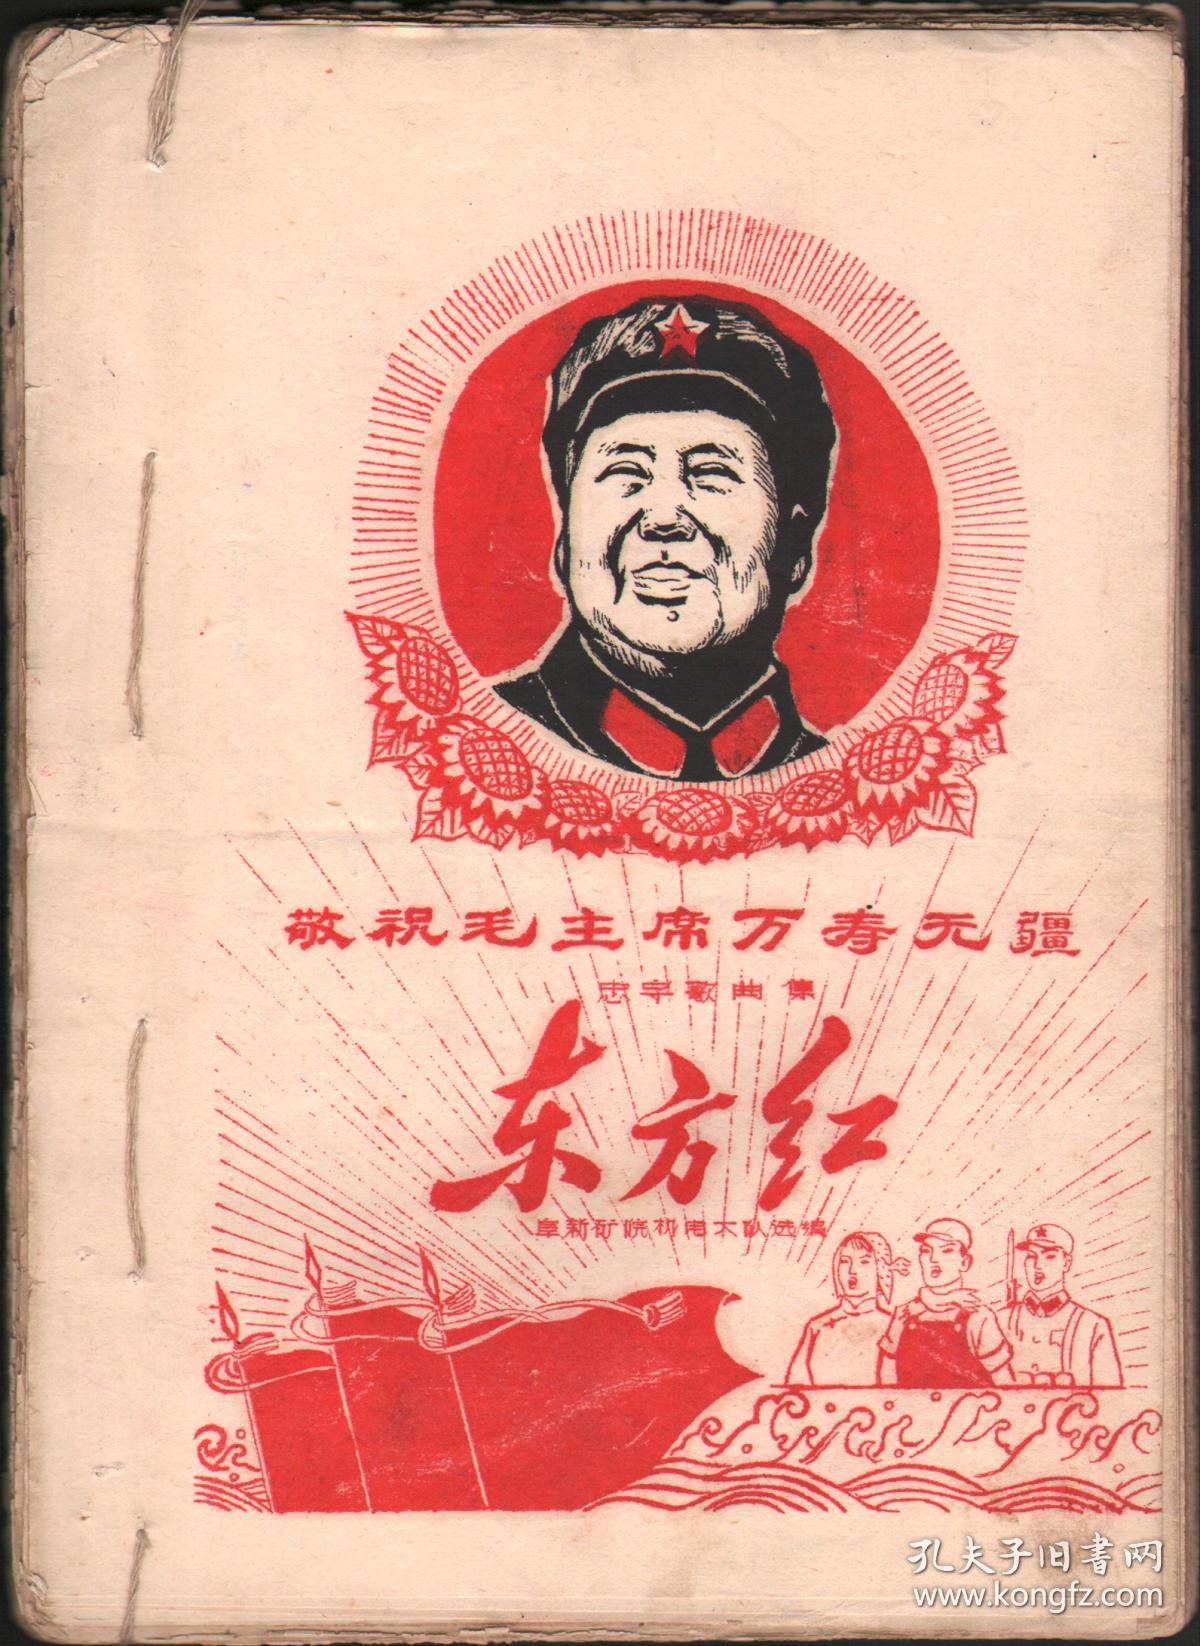 文革手刻油印歌曲集1967年《东方红歌曲